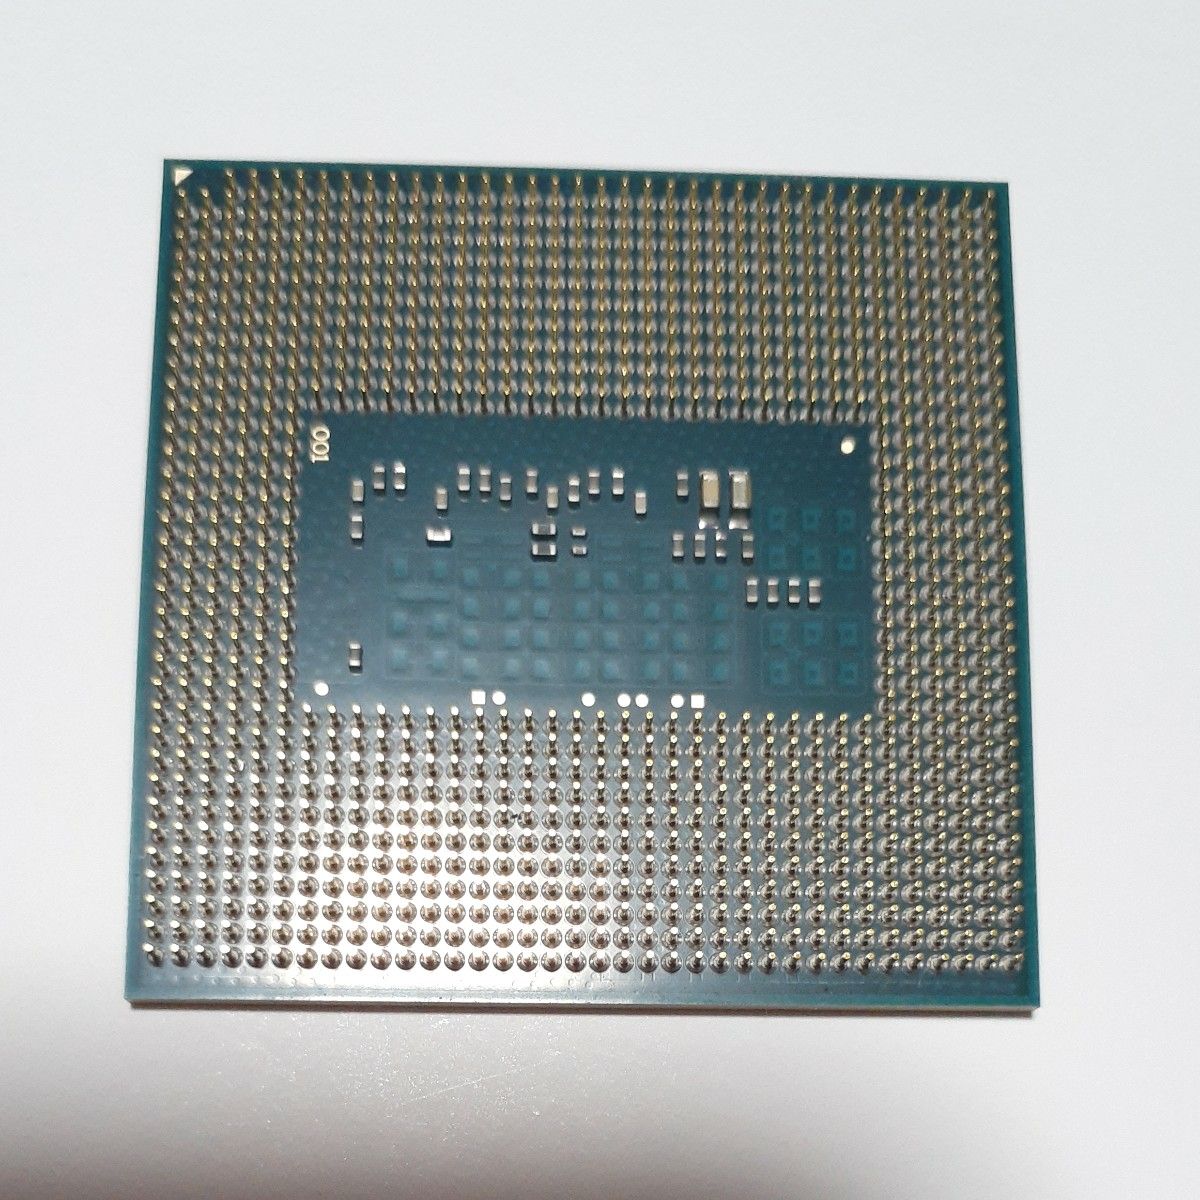  Intel Core i7-4700MQ SR15H ノートパソコン用CPU